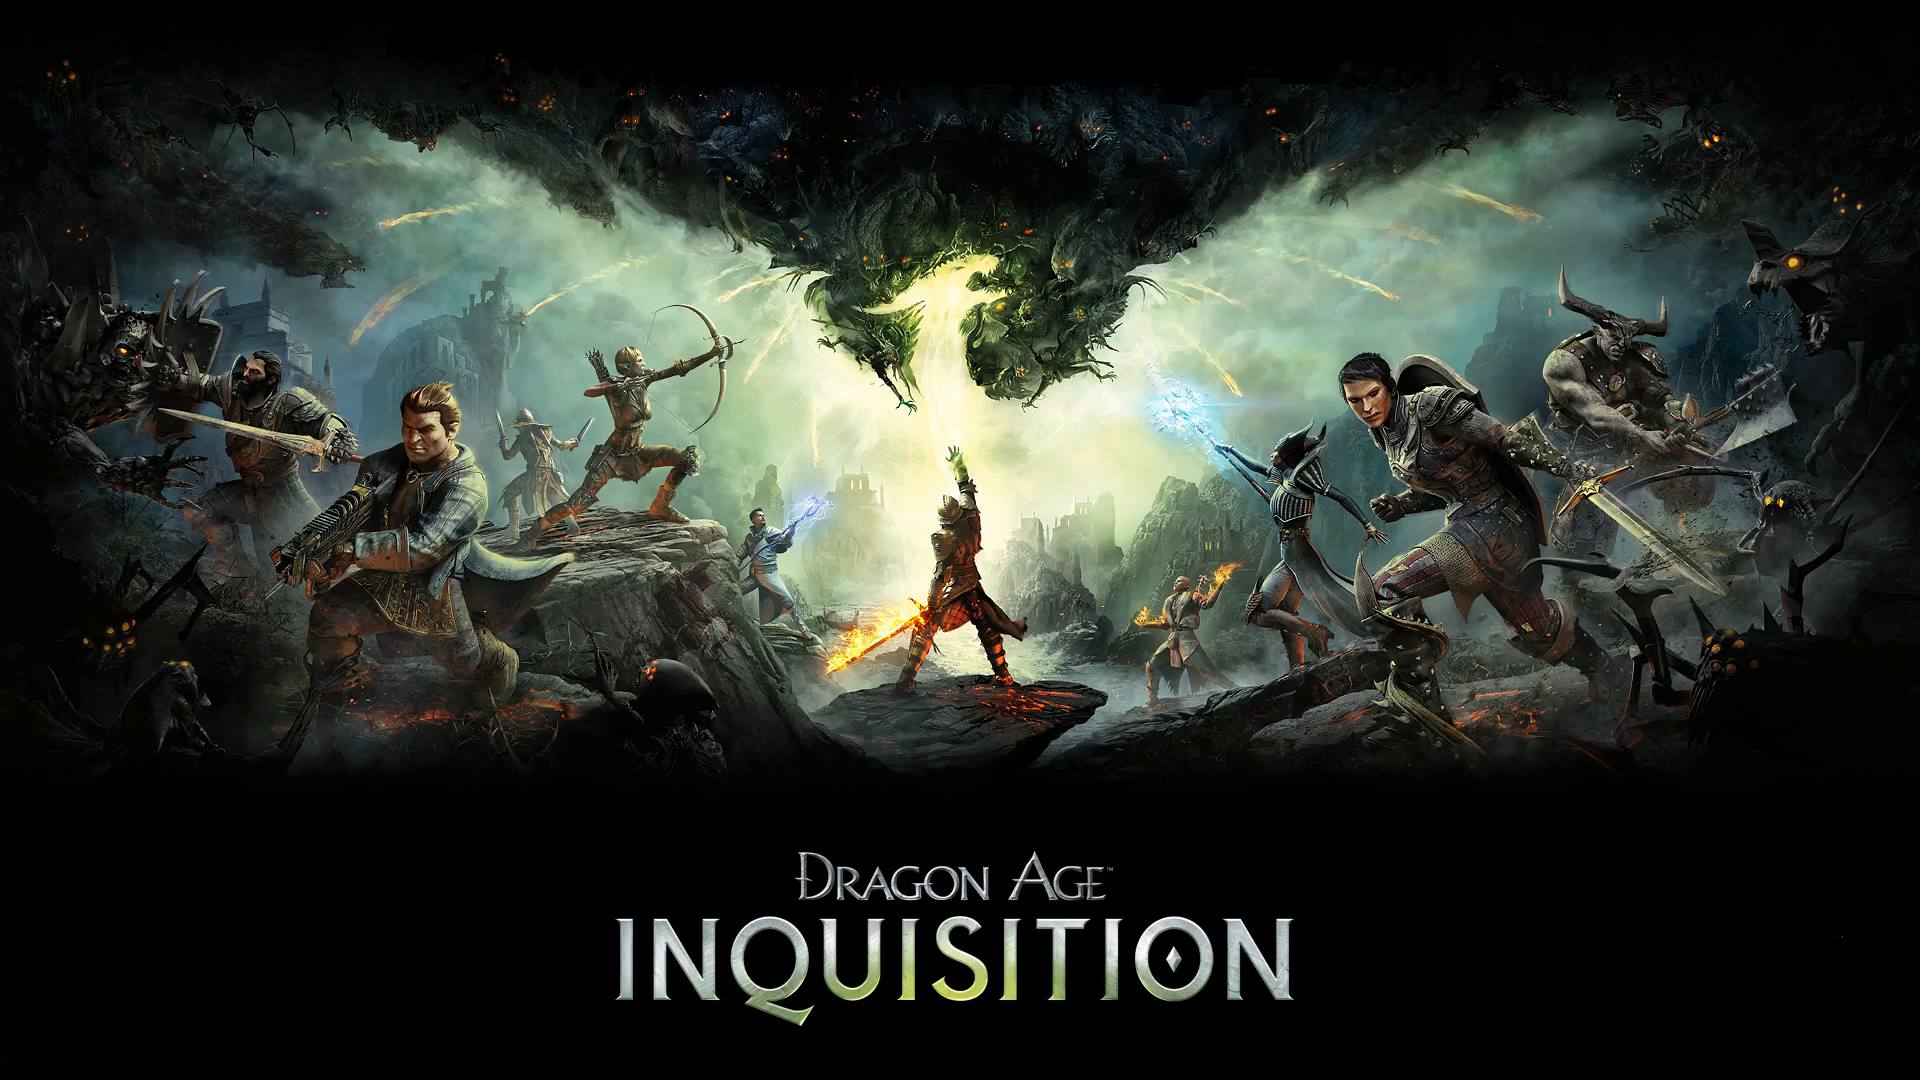 Dragon Age: Origins companions  Dragon age series, Dragon age games, Dragon  age rpg